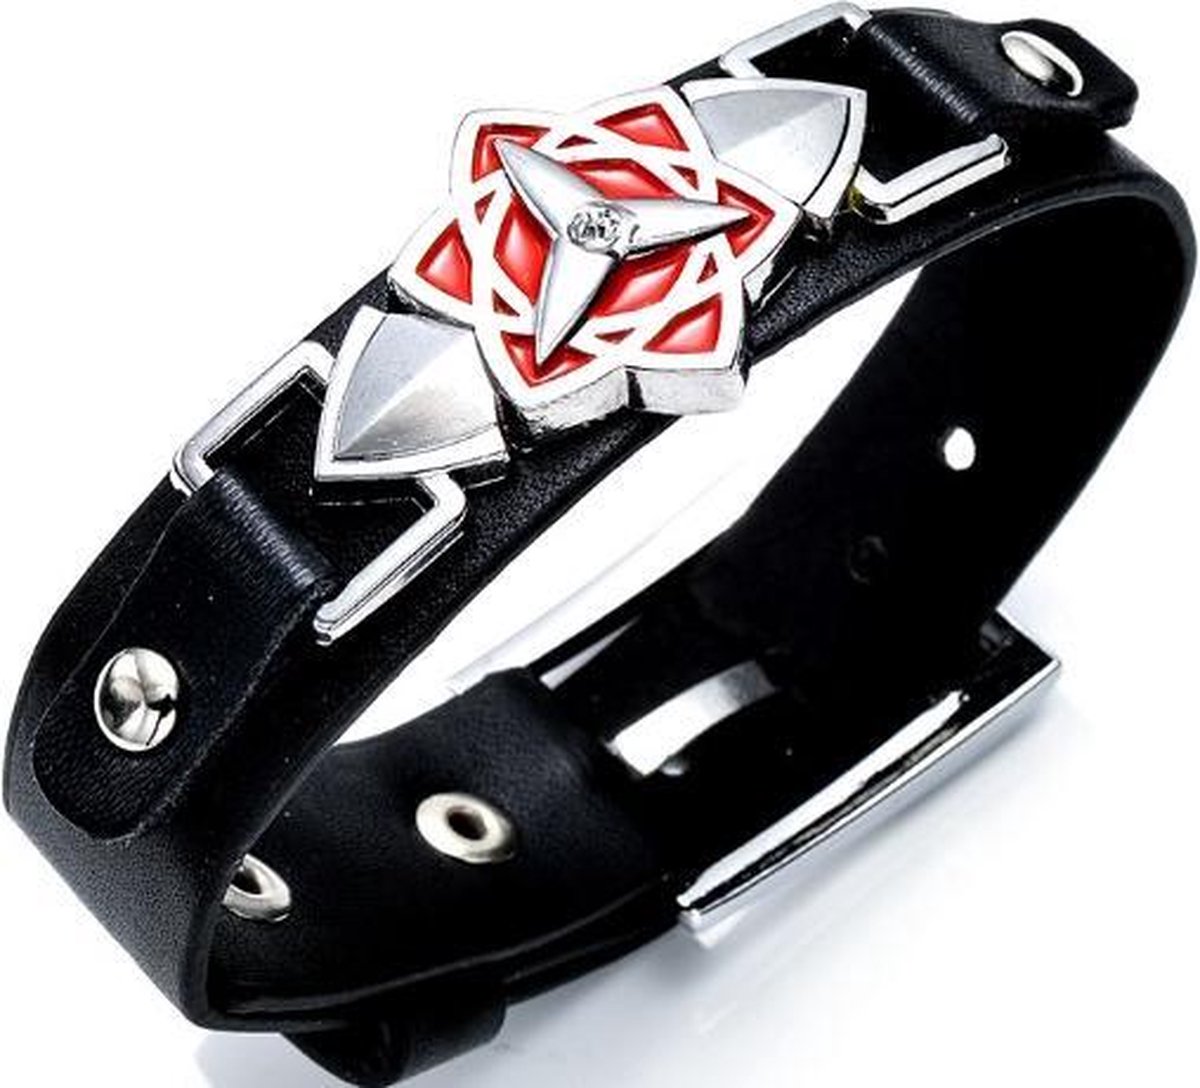 BY-ST6 - leren jongens armband - kinder armband - zwart/zilver/rood - met RVS symbool – verstelbaar